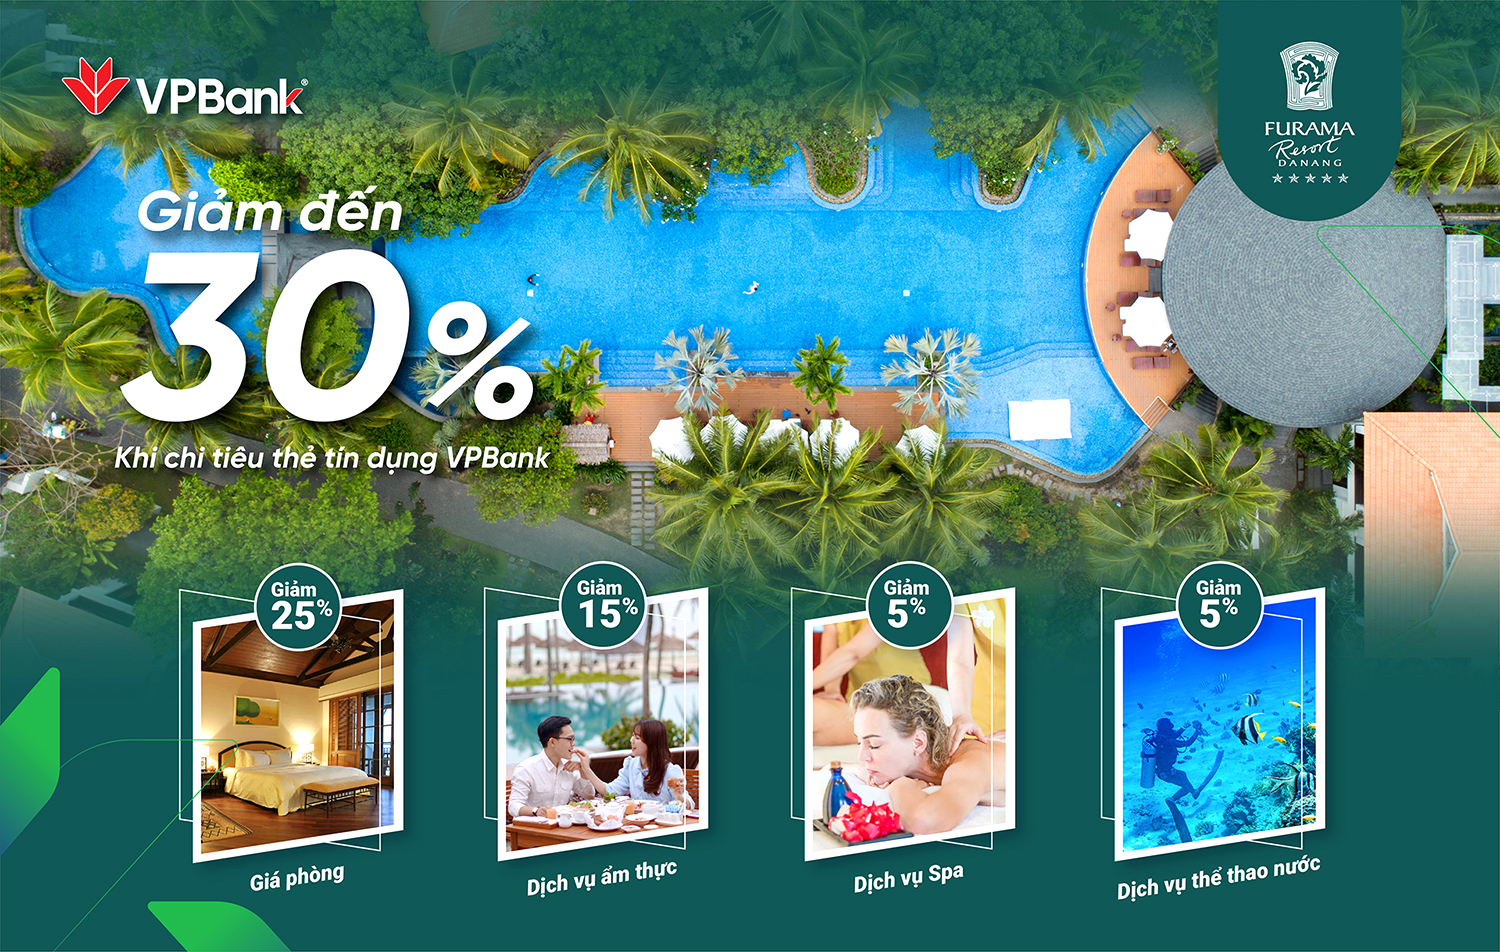 Giảm đến 30% cho chủ thẻ tín dụng VPBank tại Furama Resort Đà Nẵng